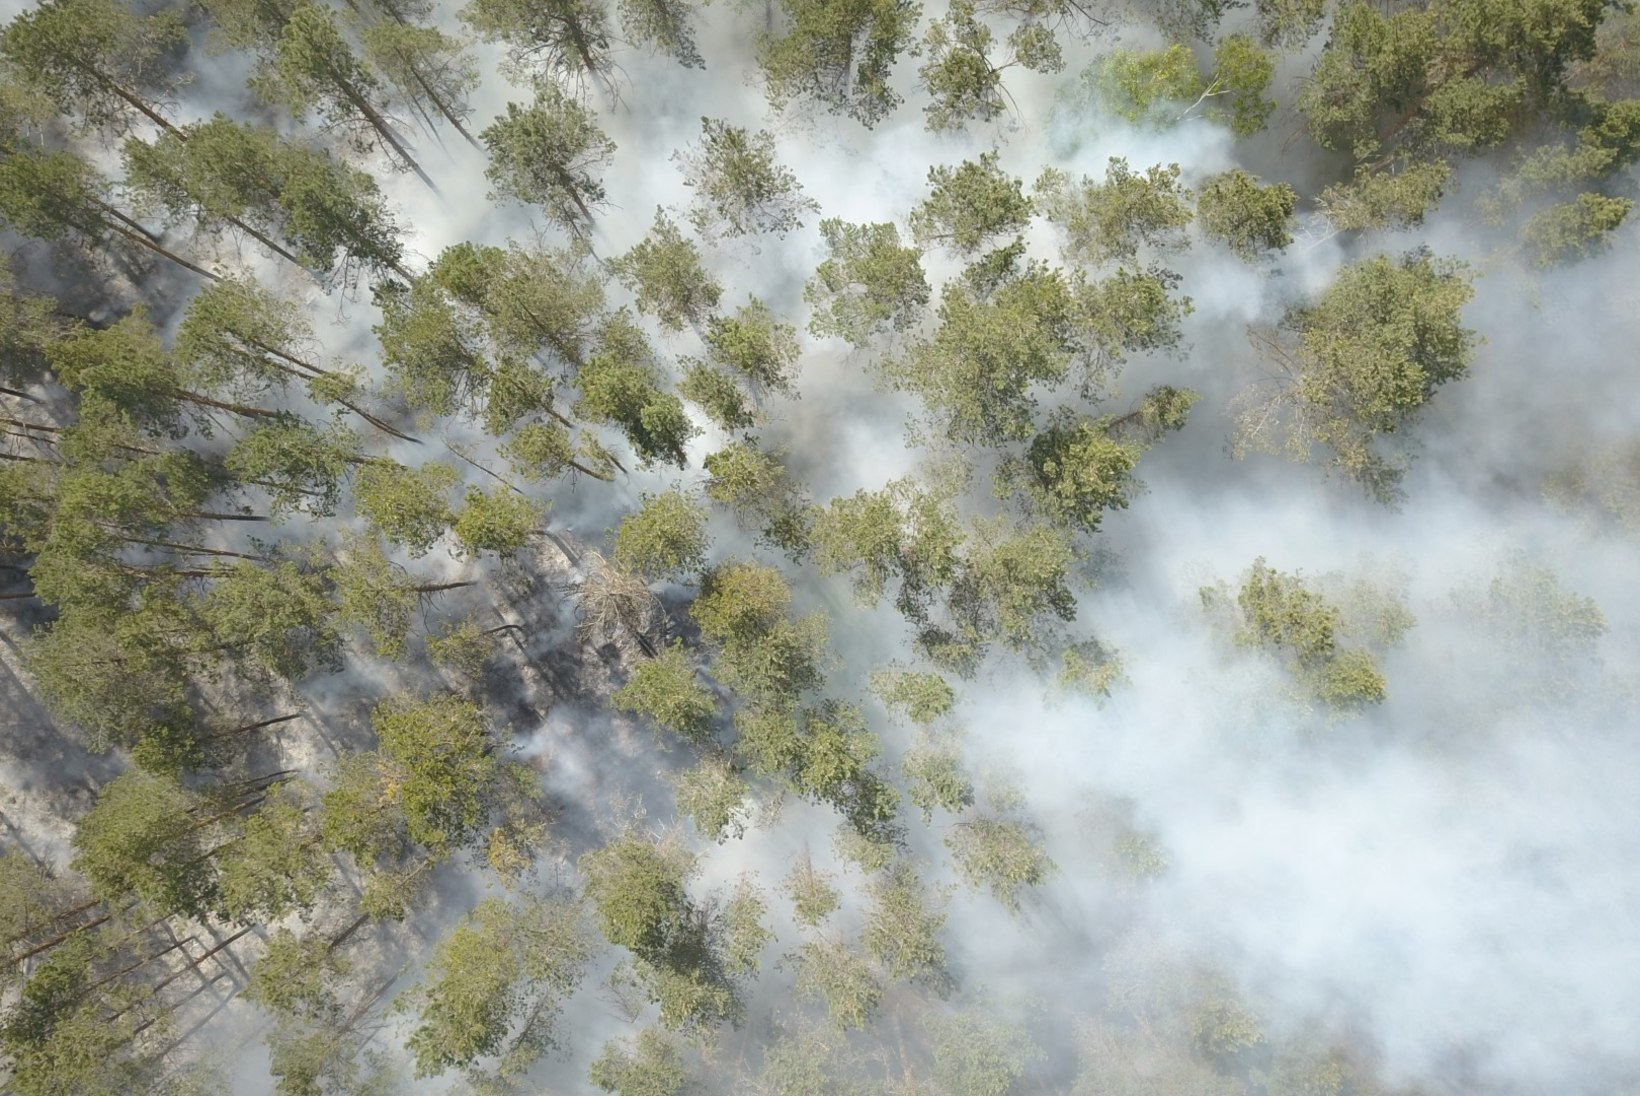 DROONIFOTOD | Lääne-Virumaa metsapõlengut kustutasid päästjad kolmest maakonnast